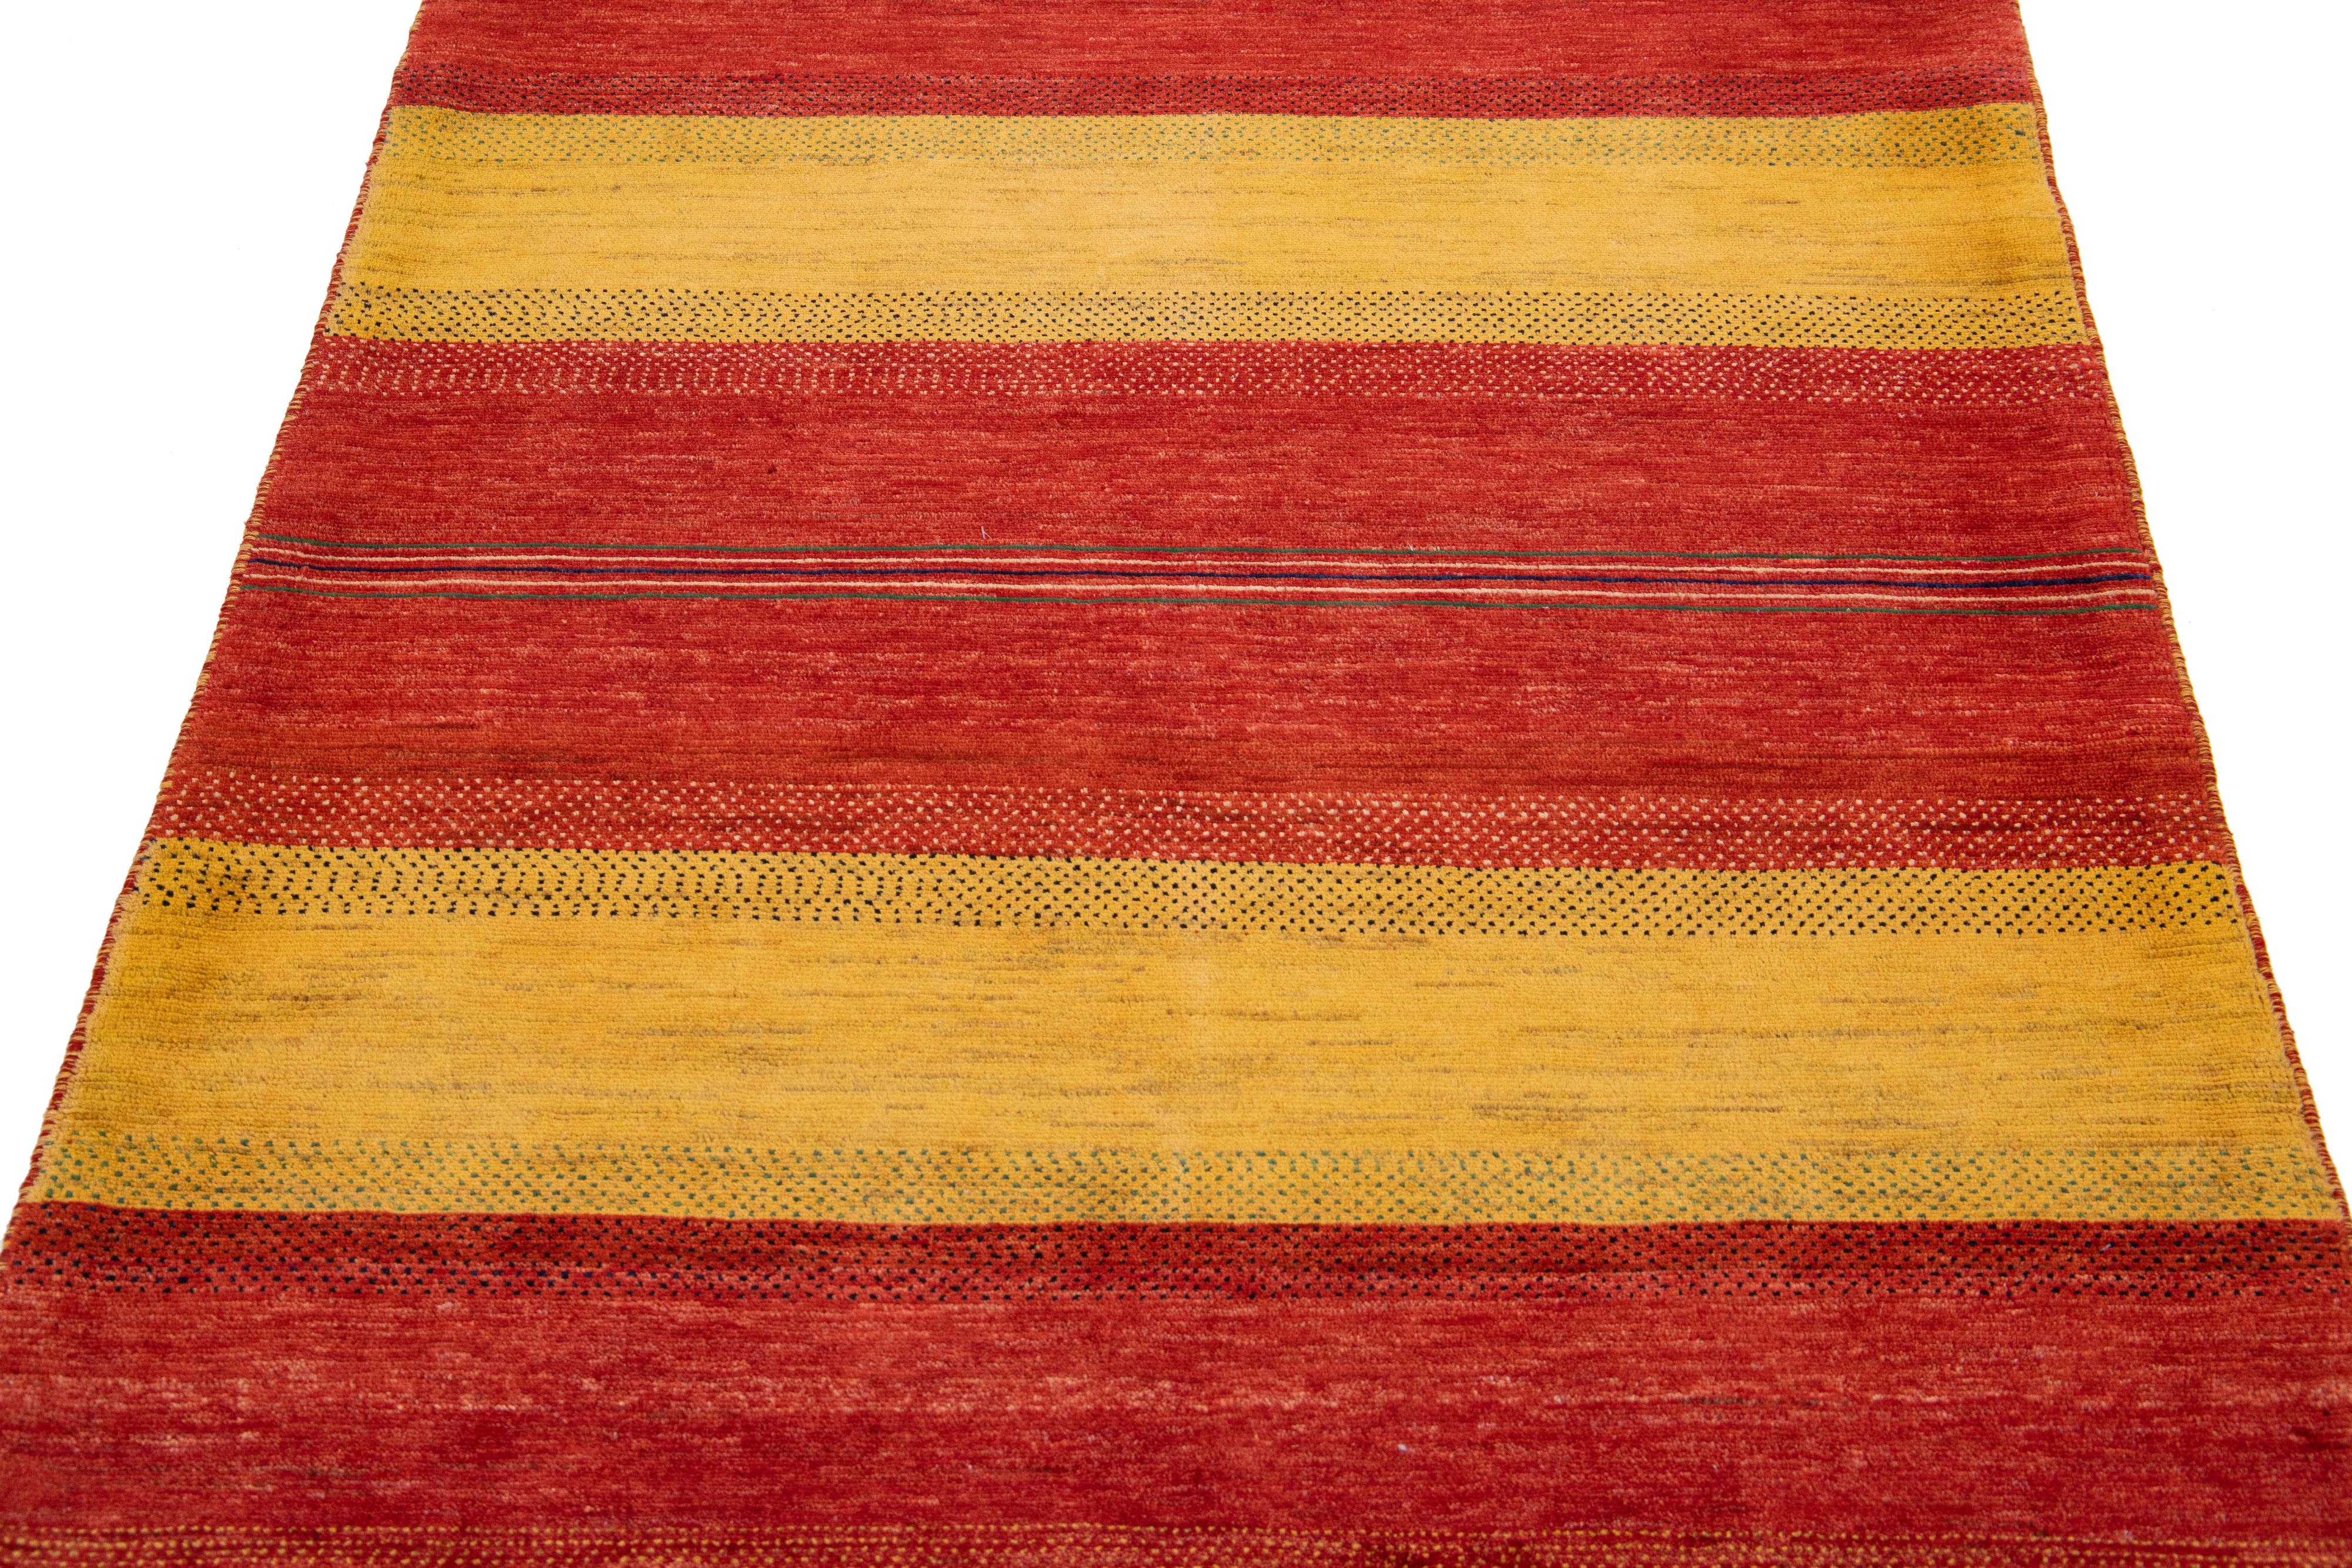 Schöner, moderner, handgewebter Wollteppich im Gabbeh-Stil mit einem roten Farbfeld. Dieser Perserteppich hat ein wunderschönes minimalistisches Design mit blauen und gelben Akzenten.

Dieser Teppich misst: 3'11